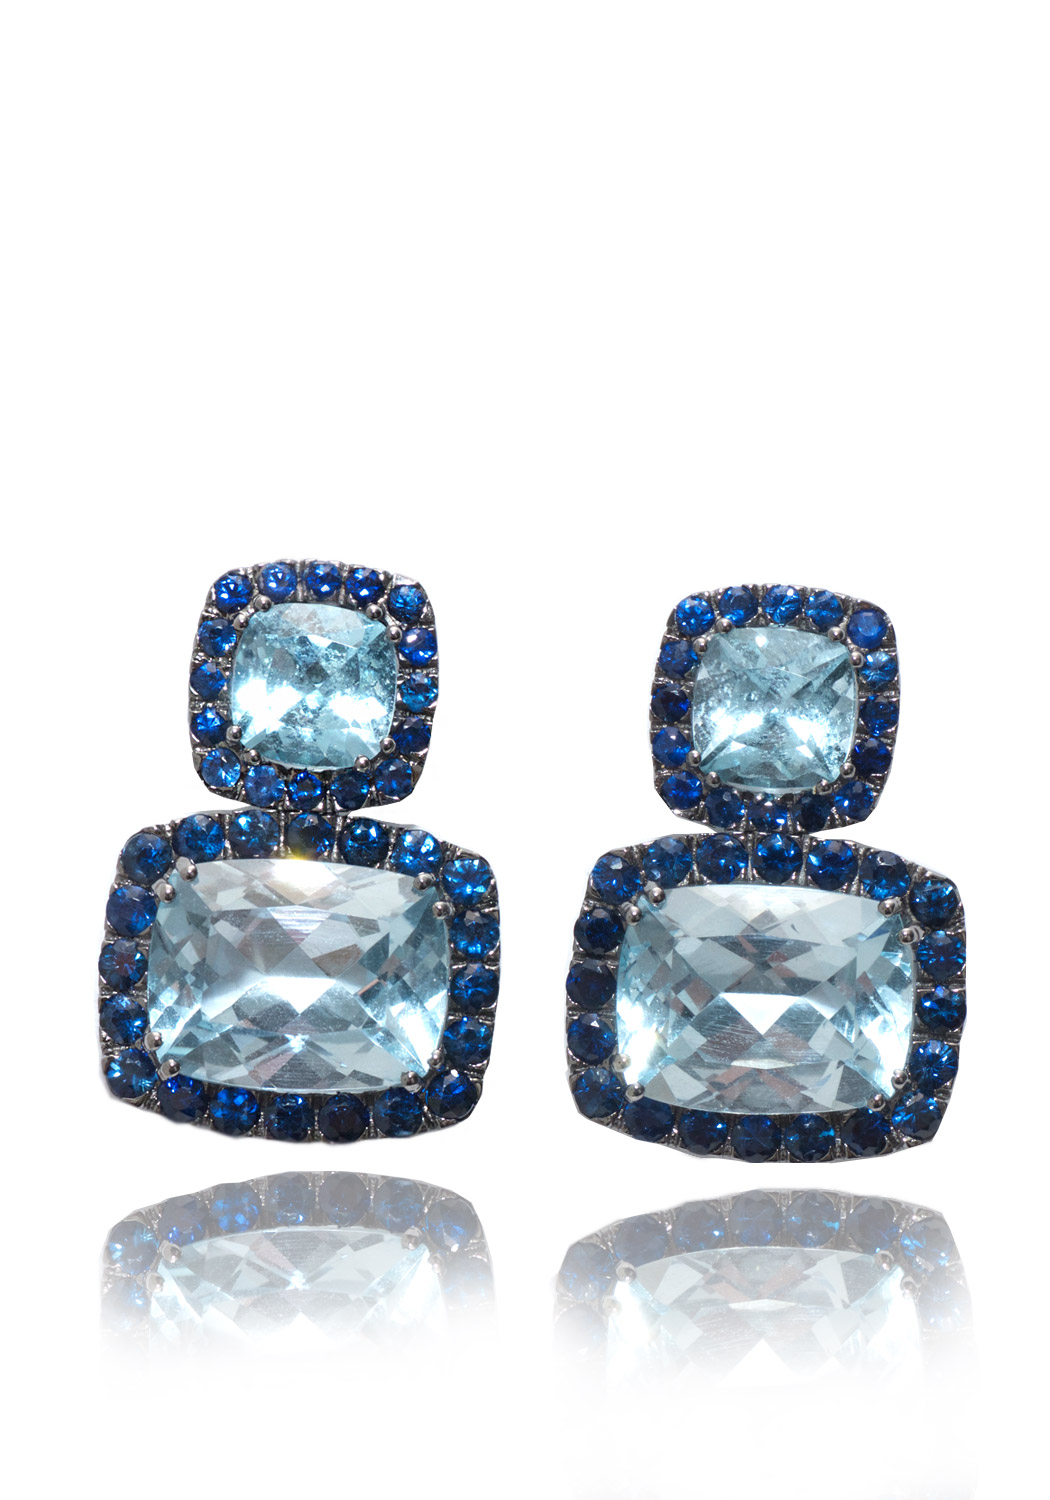 A & Furst Blue Topaz Sapphire Dynamite Earrings 